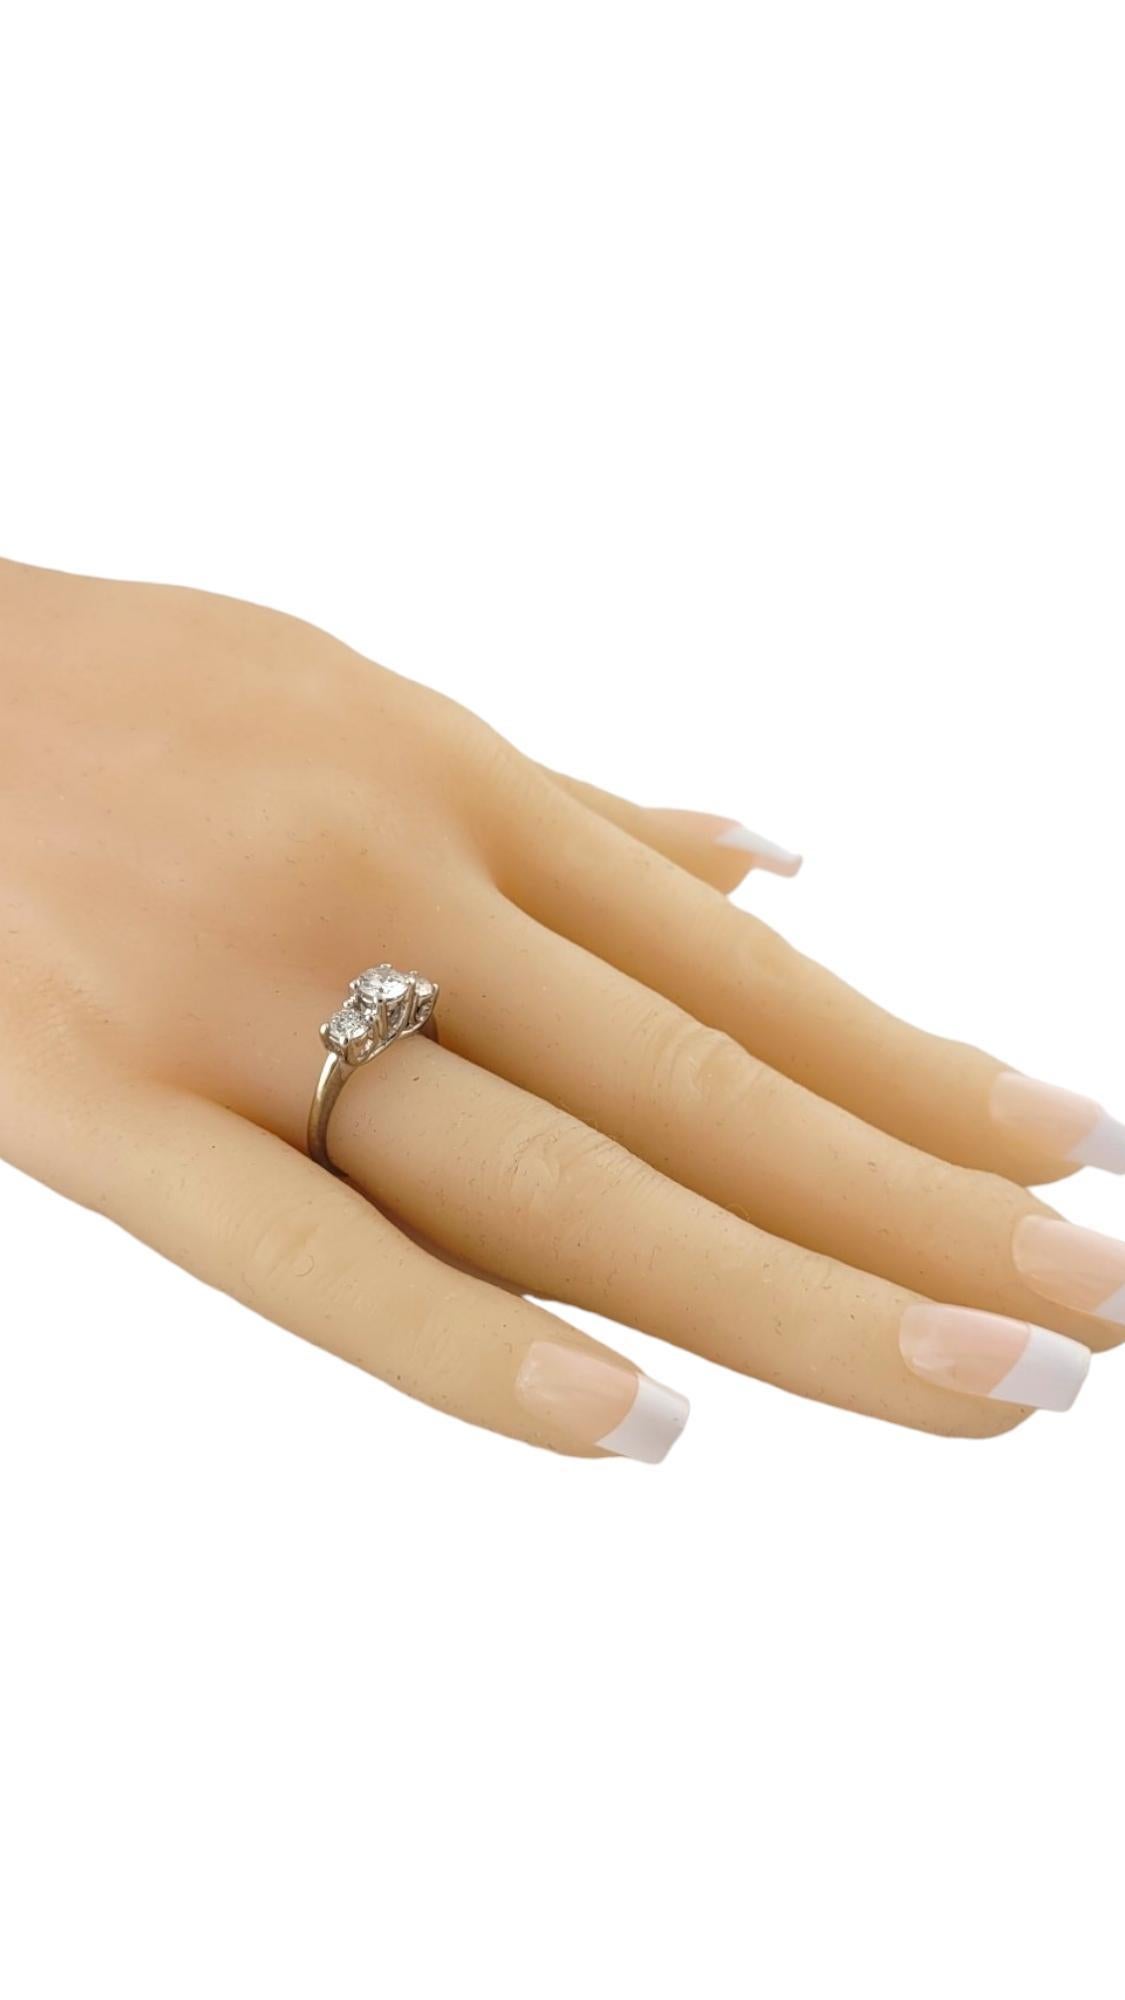 14 Karat White Gold Three Stone Diamond Ring Size 5 #16992 For Sale 2